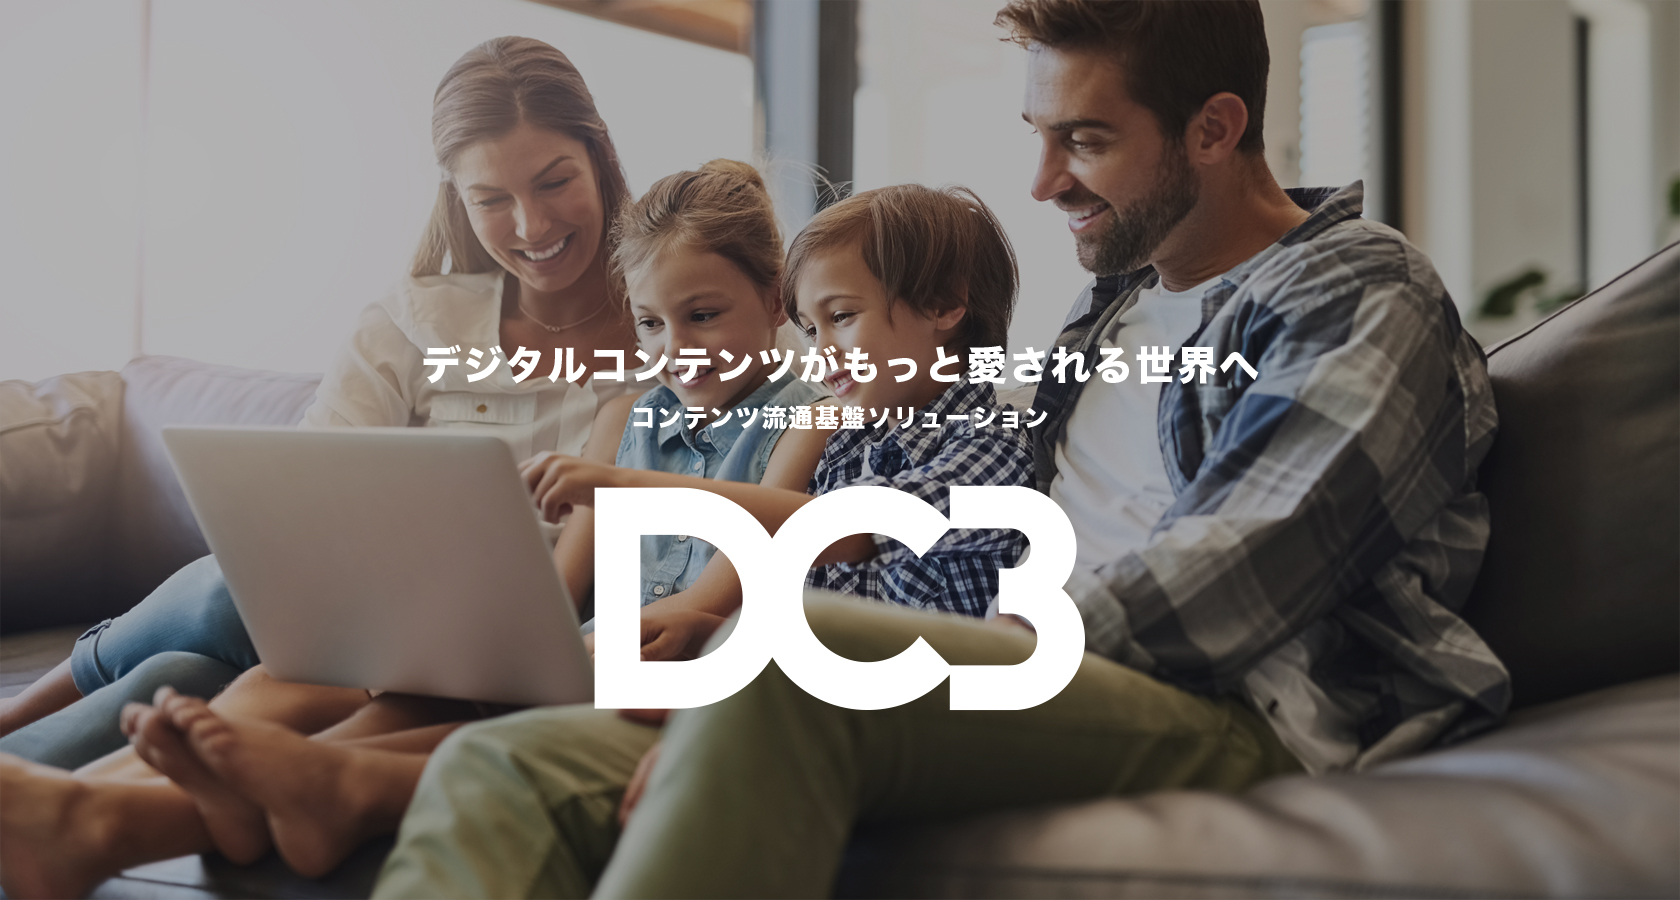 コンテンツ流通基盤ソリューション「DC3」を正式リリース